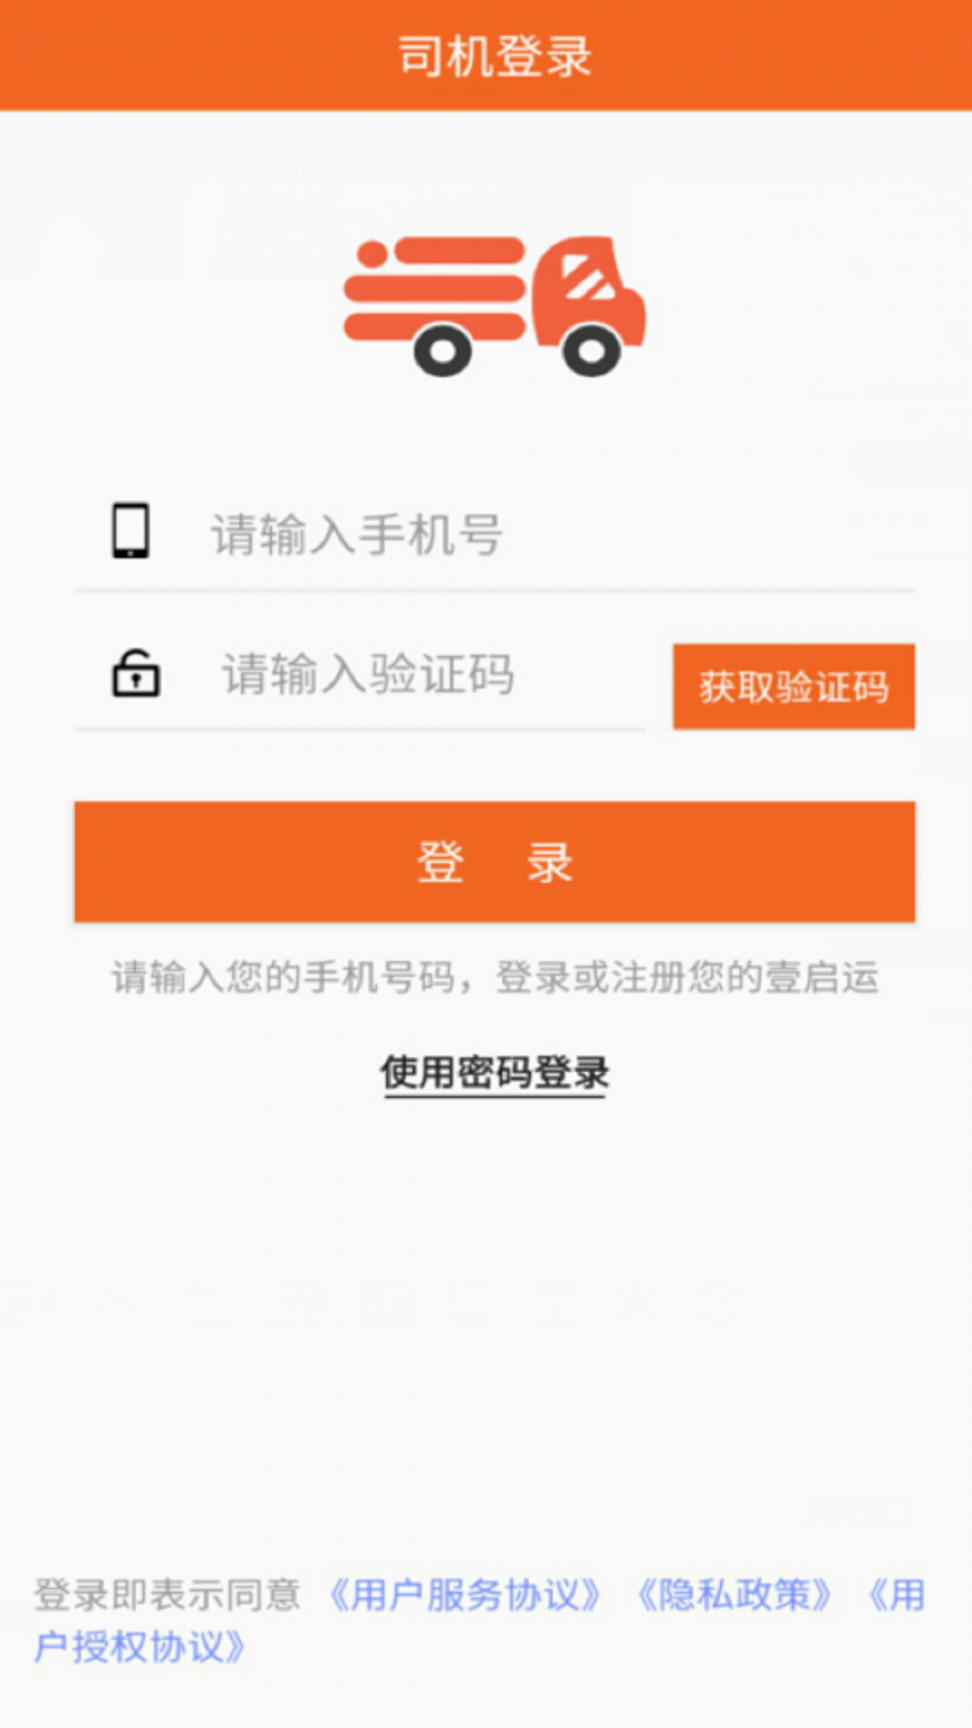 壹启运司机版App下载1